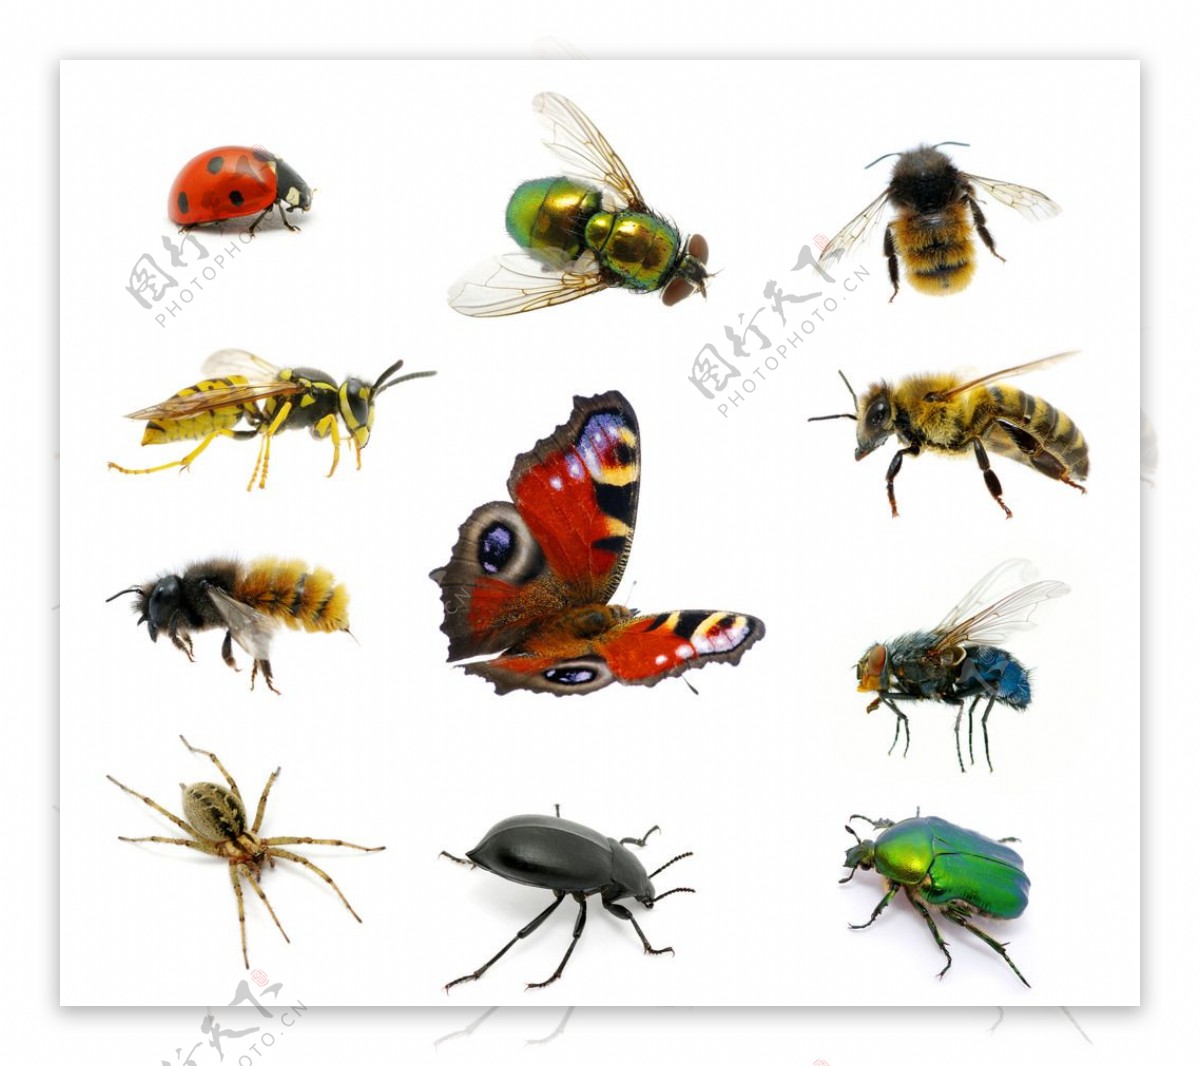 图片素材 : 特写, 蜻蜓, 飞, 昆虫, 无脊椎动物, 小, 宏, 性质, 户外, 翅膀 6000x4000 - - 1518033 ...